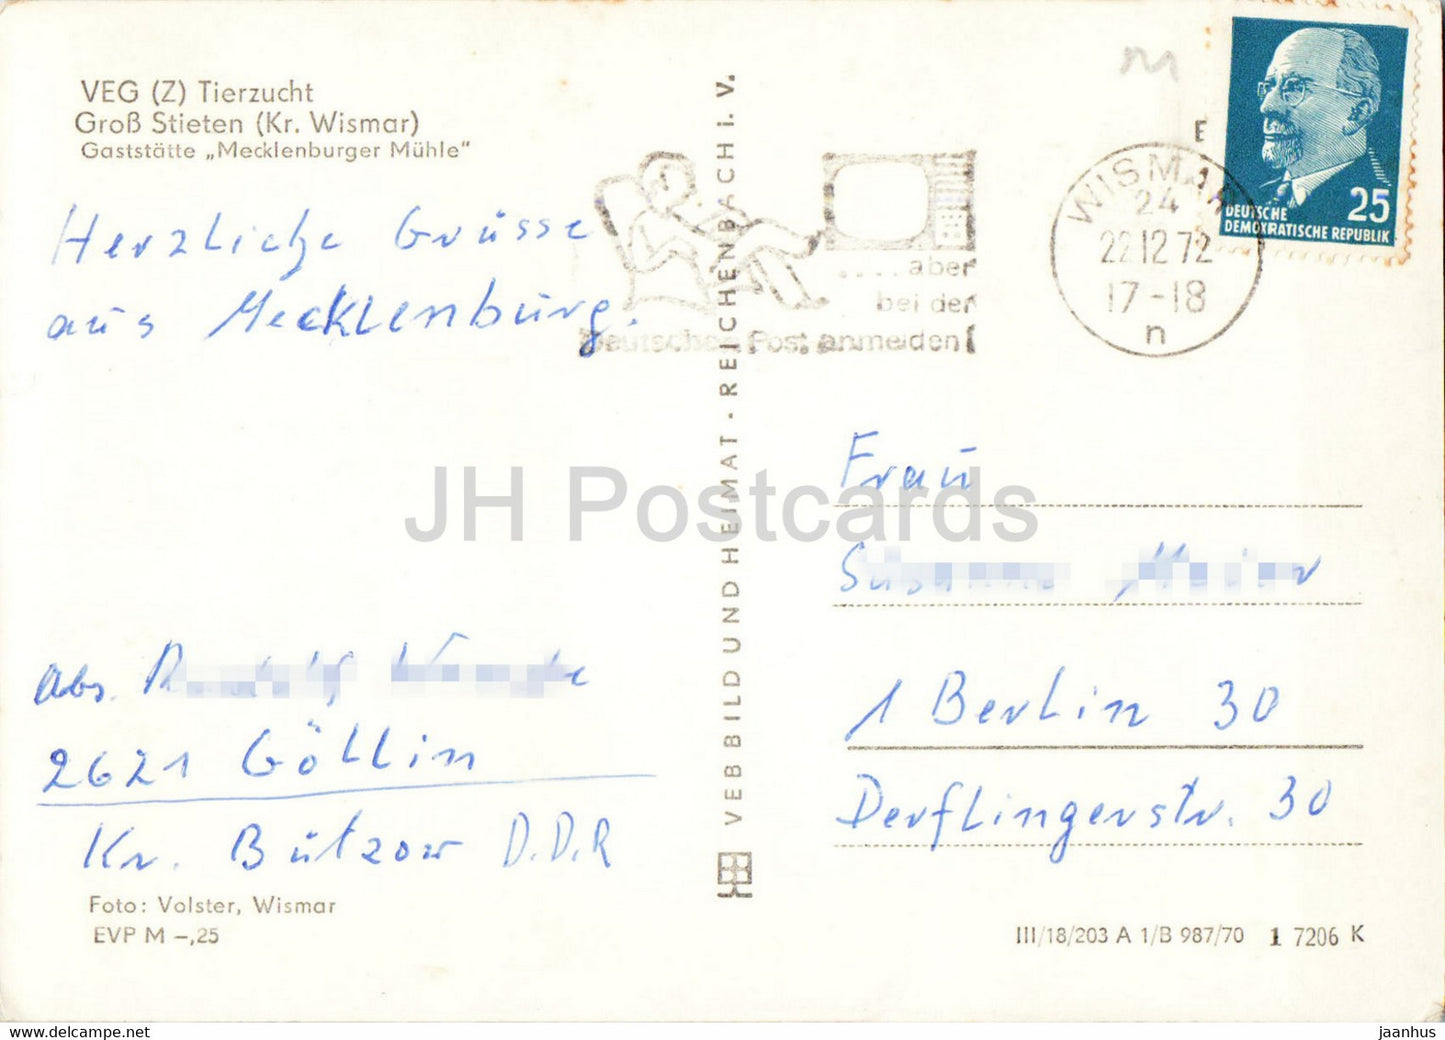 VEG Tierzucht - Gross Stieten - Gaststätte Mecklenburger Mühle - Windmühle - alte Postkarte - 1972 - Deutschland DDR - gebraucht